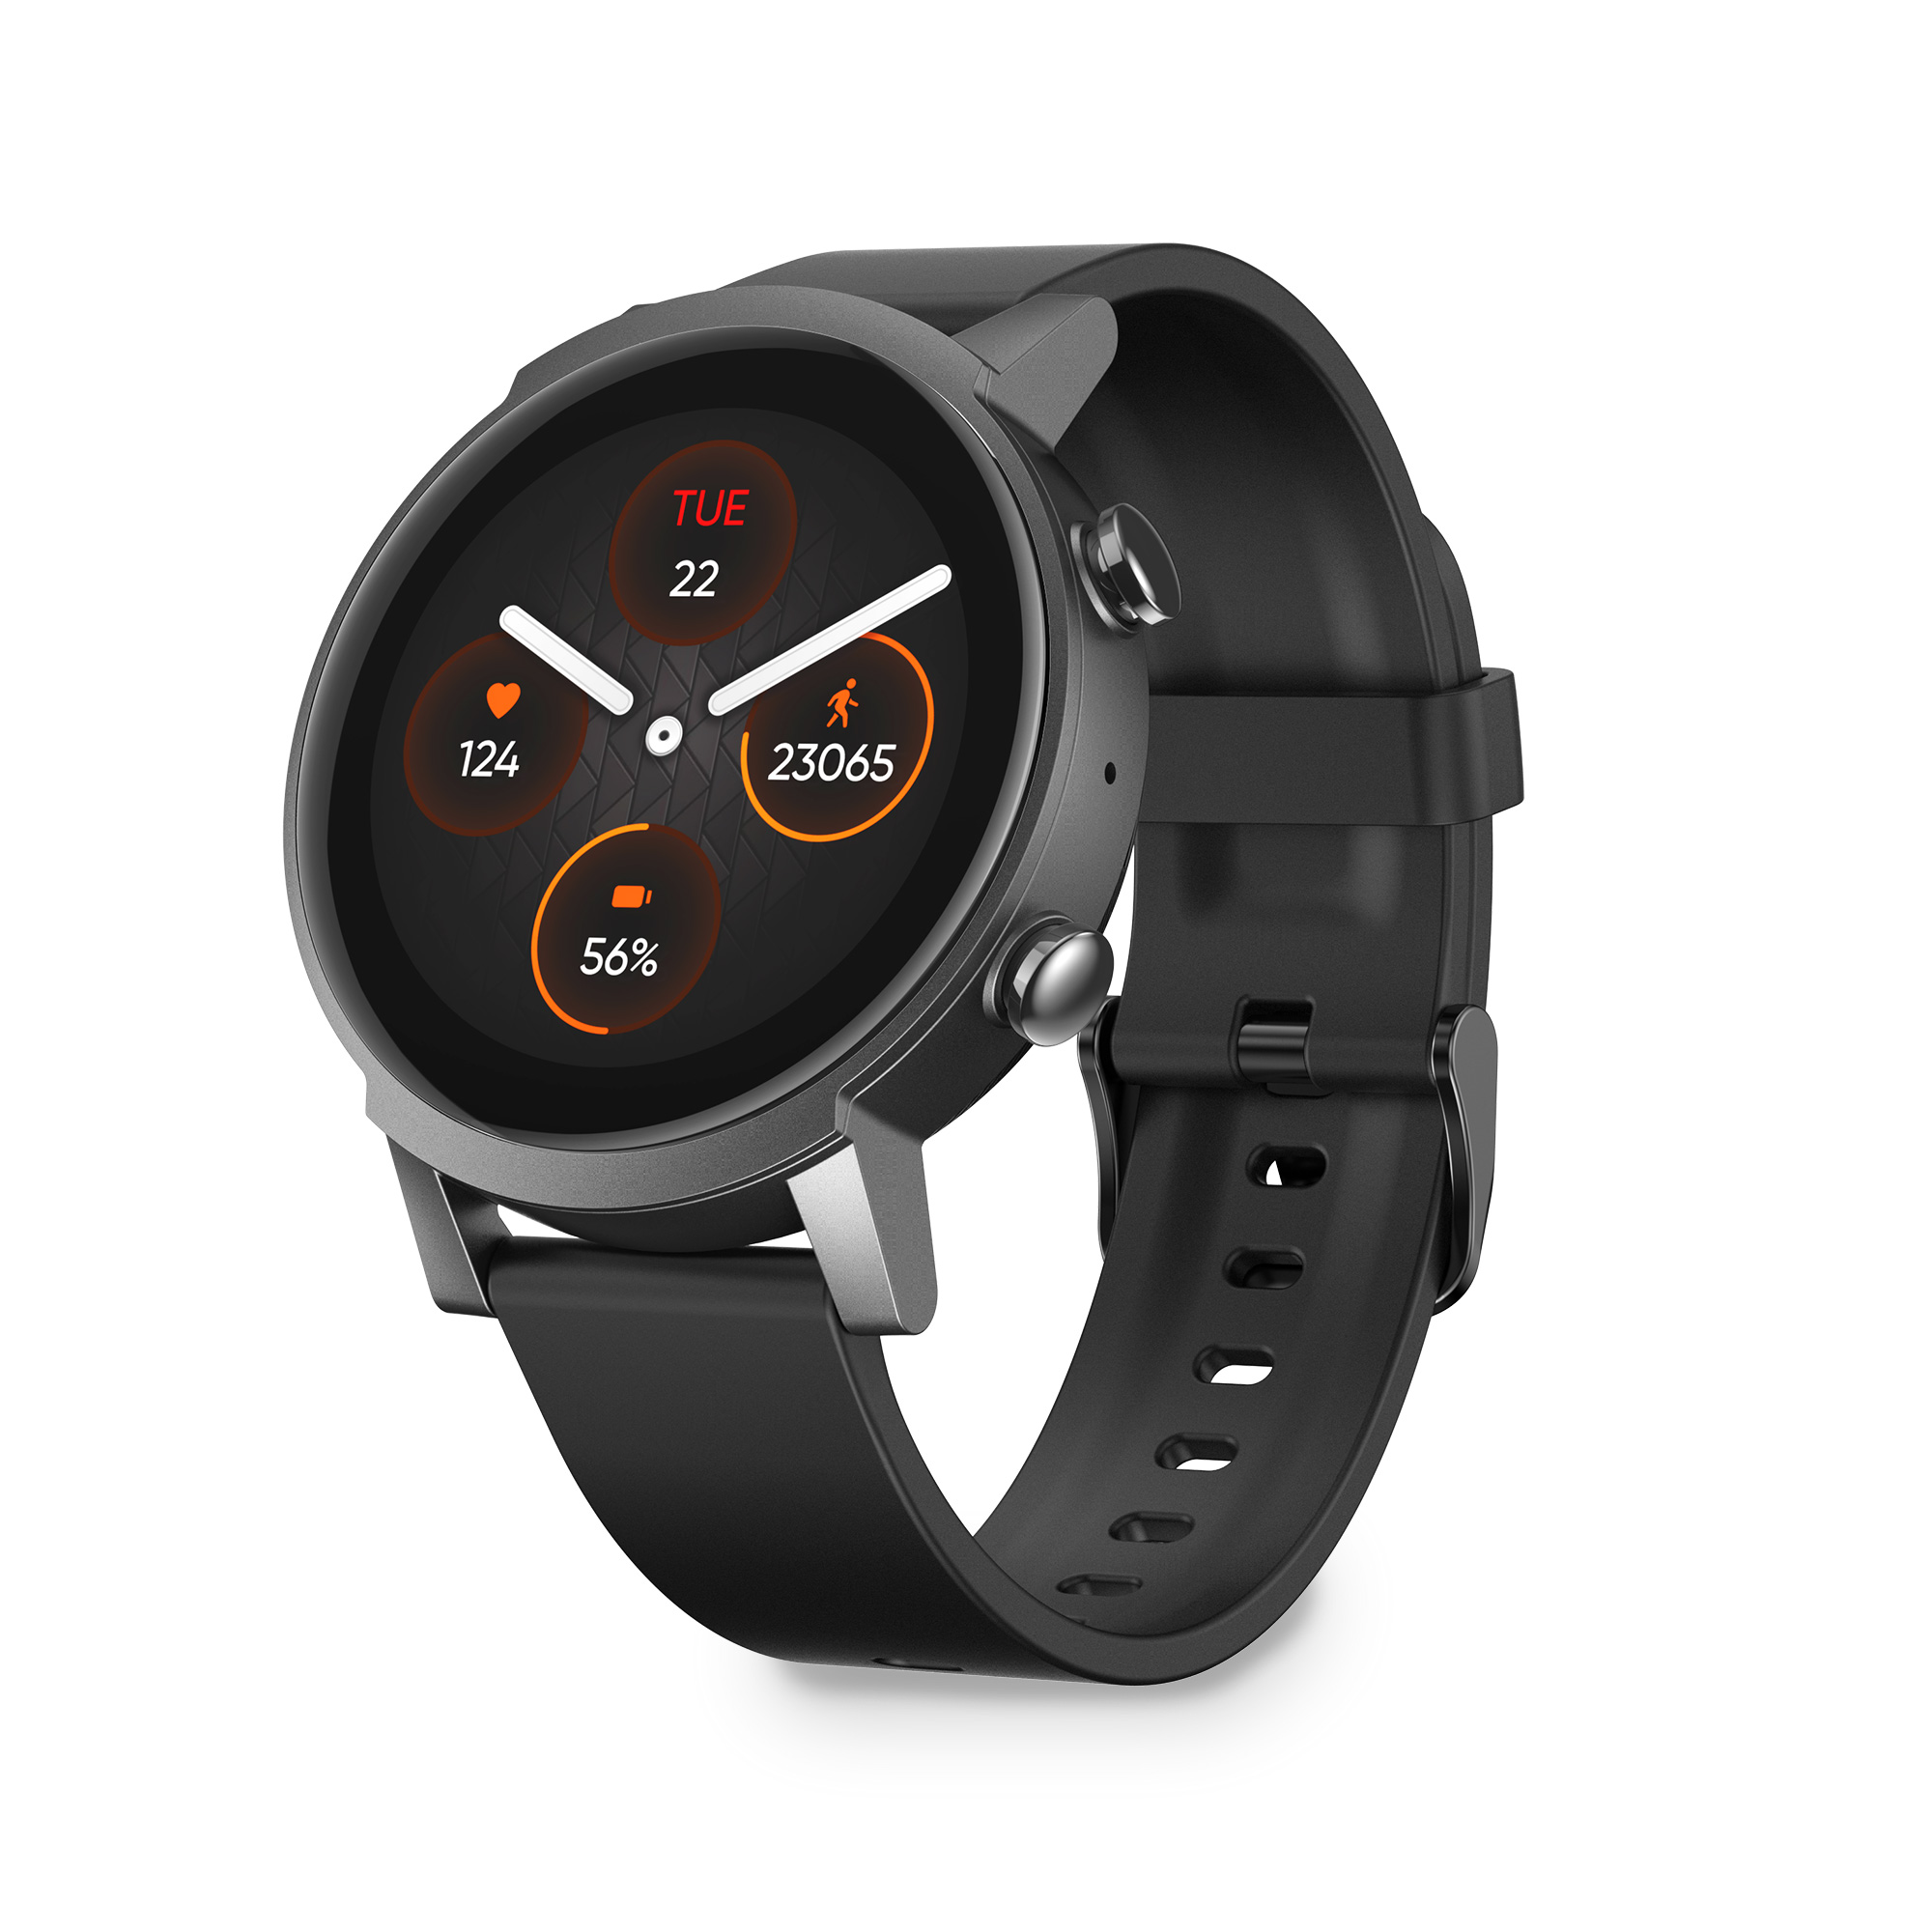 Smartwatch Mobvoi Tic Watch E3 Con Autonomía 45 Días Y Sumergible - negro - 